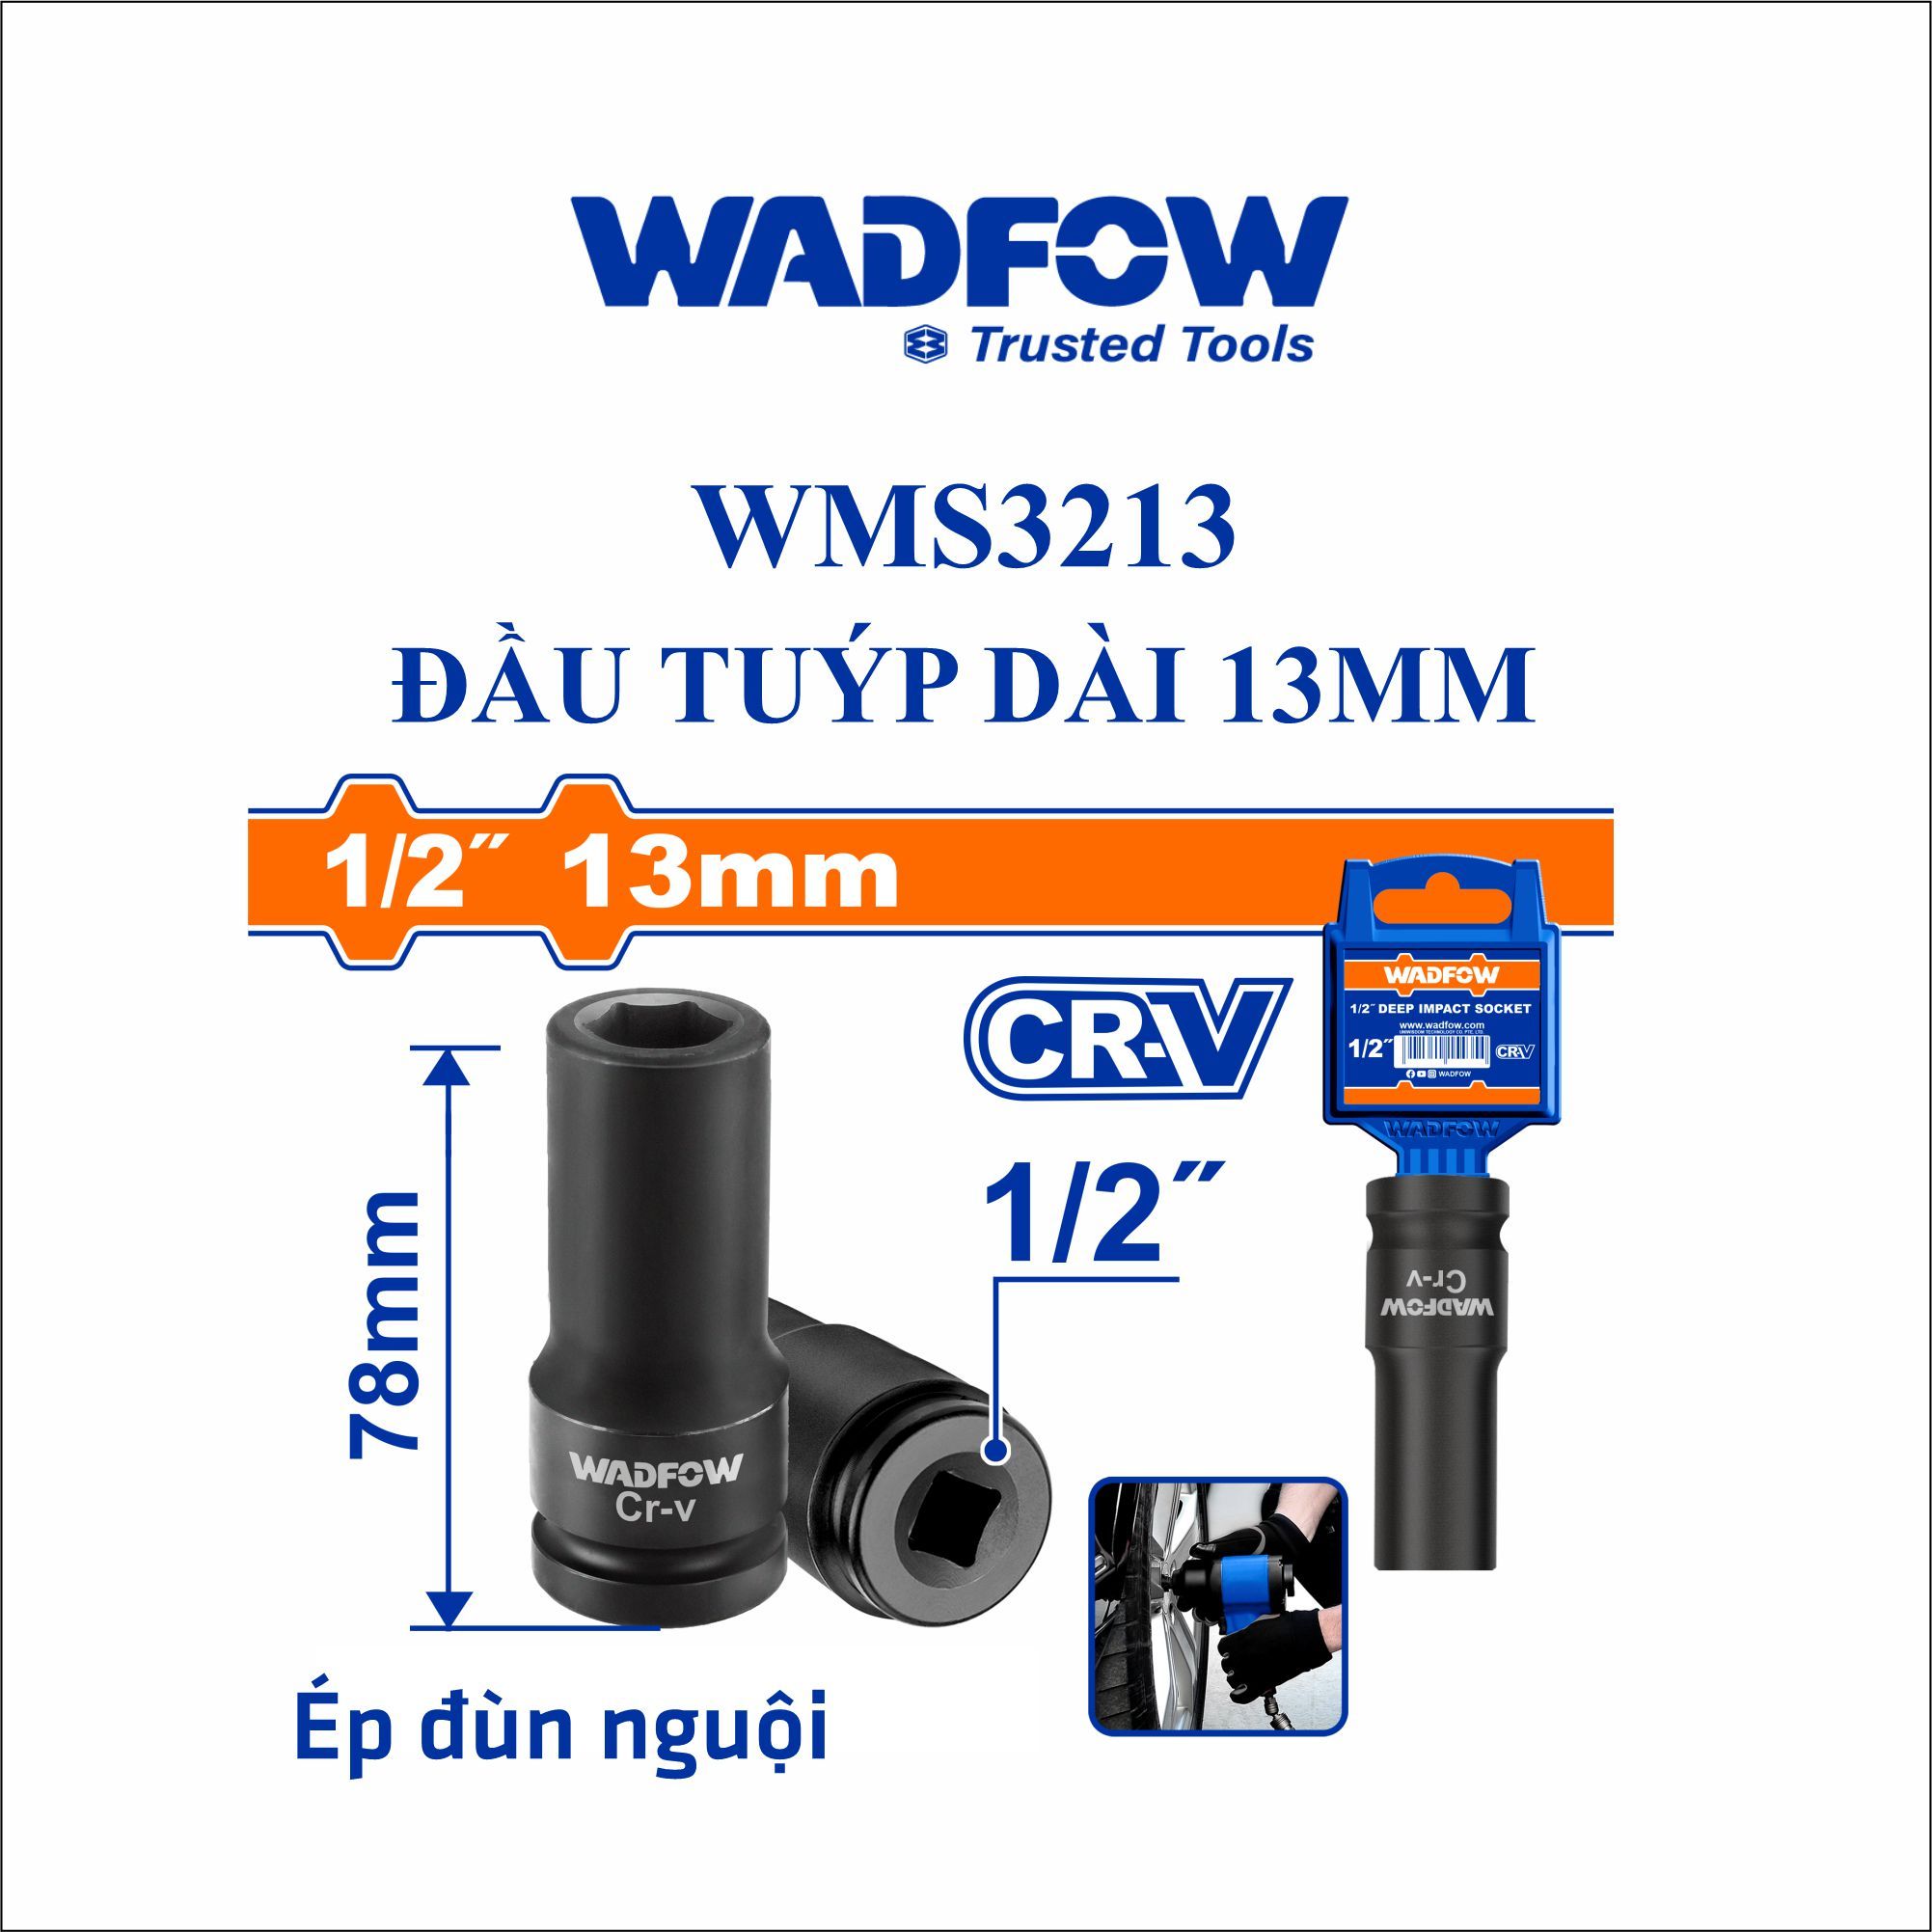  Đầu tuýp dài 13mm WADFOW WMS3213 